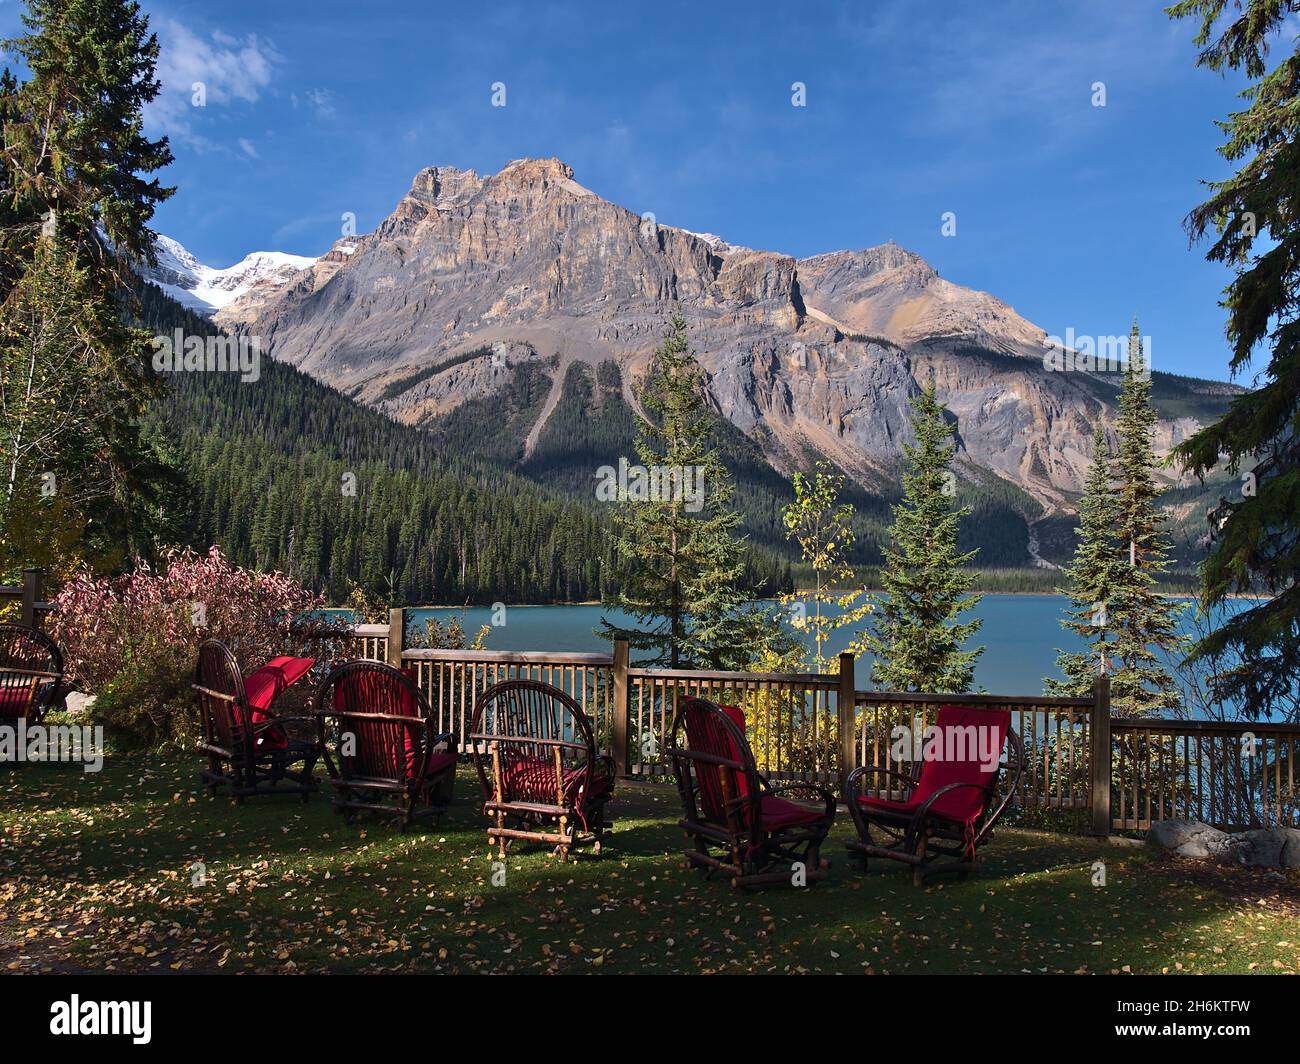 Splendida vista sul famoso lago Emerald nel parco nazionale di Yoho, British Columbia, Canada, nelle Montagne Rocciose con sedie di legno e cuscini rossi. Foto Stock